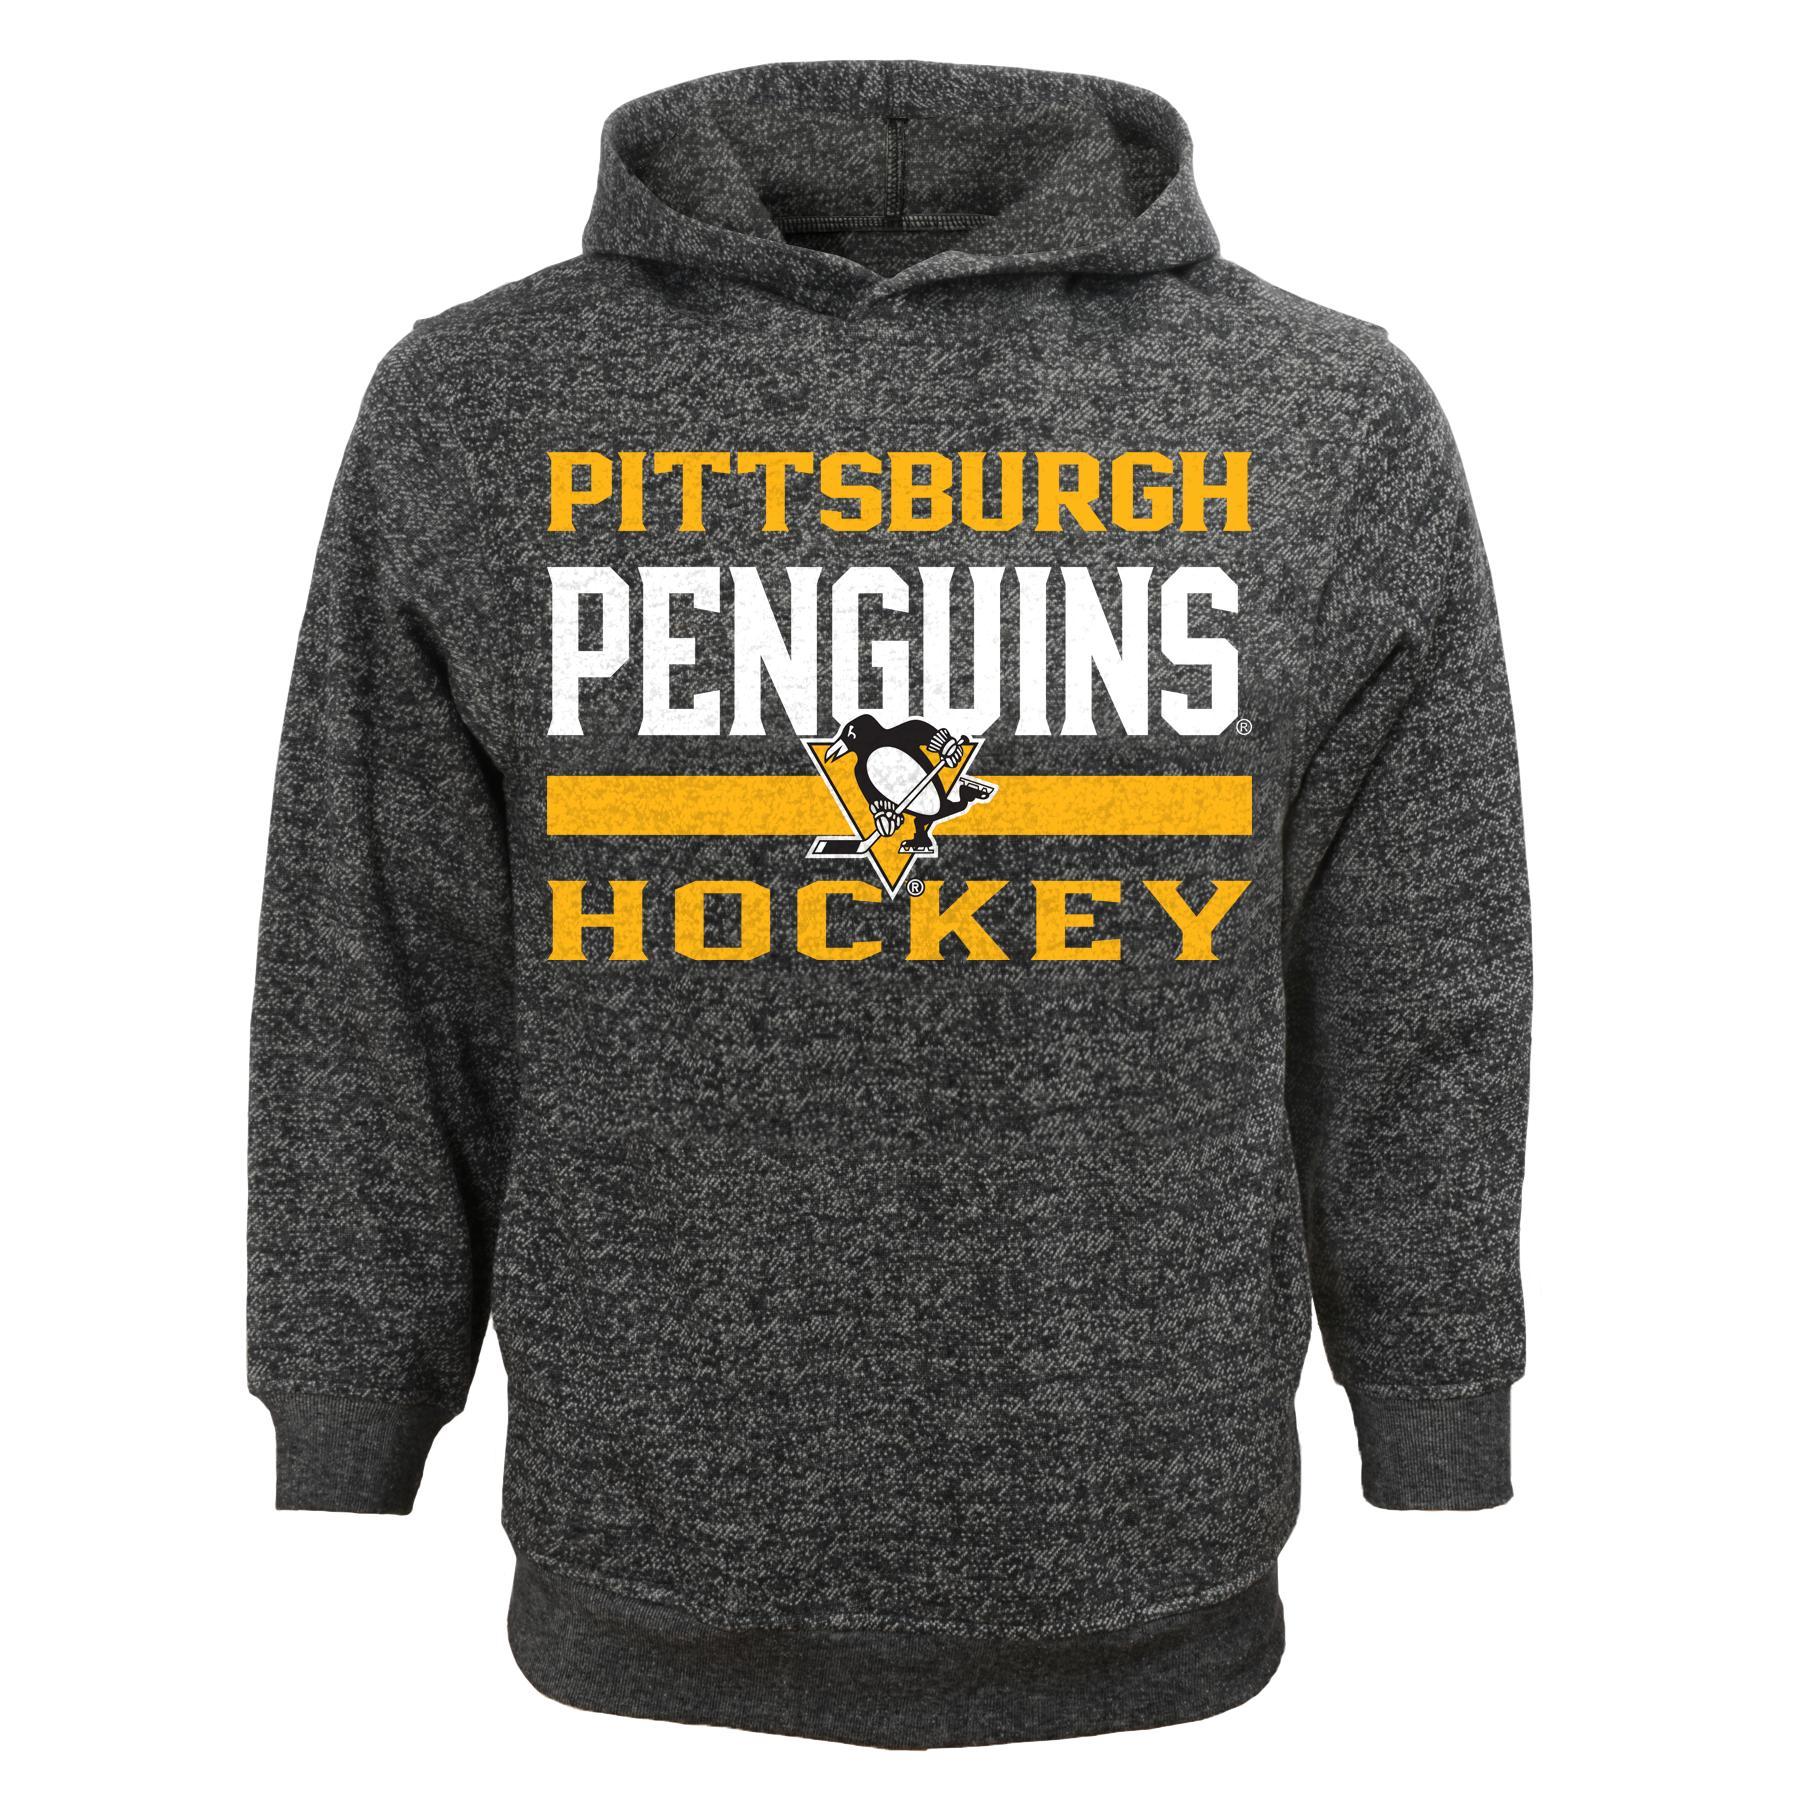 NHL Boys' Hoodie - Pittsburgh Penguins